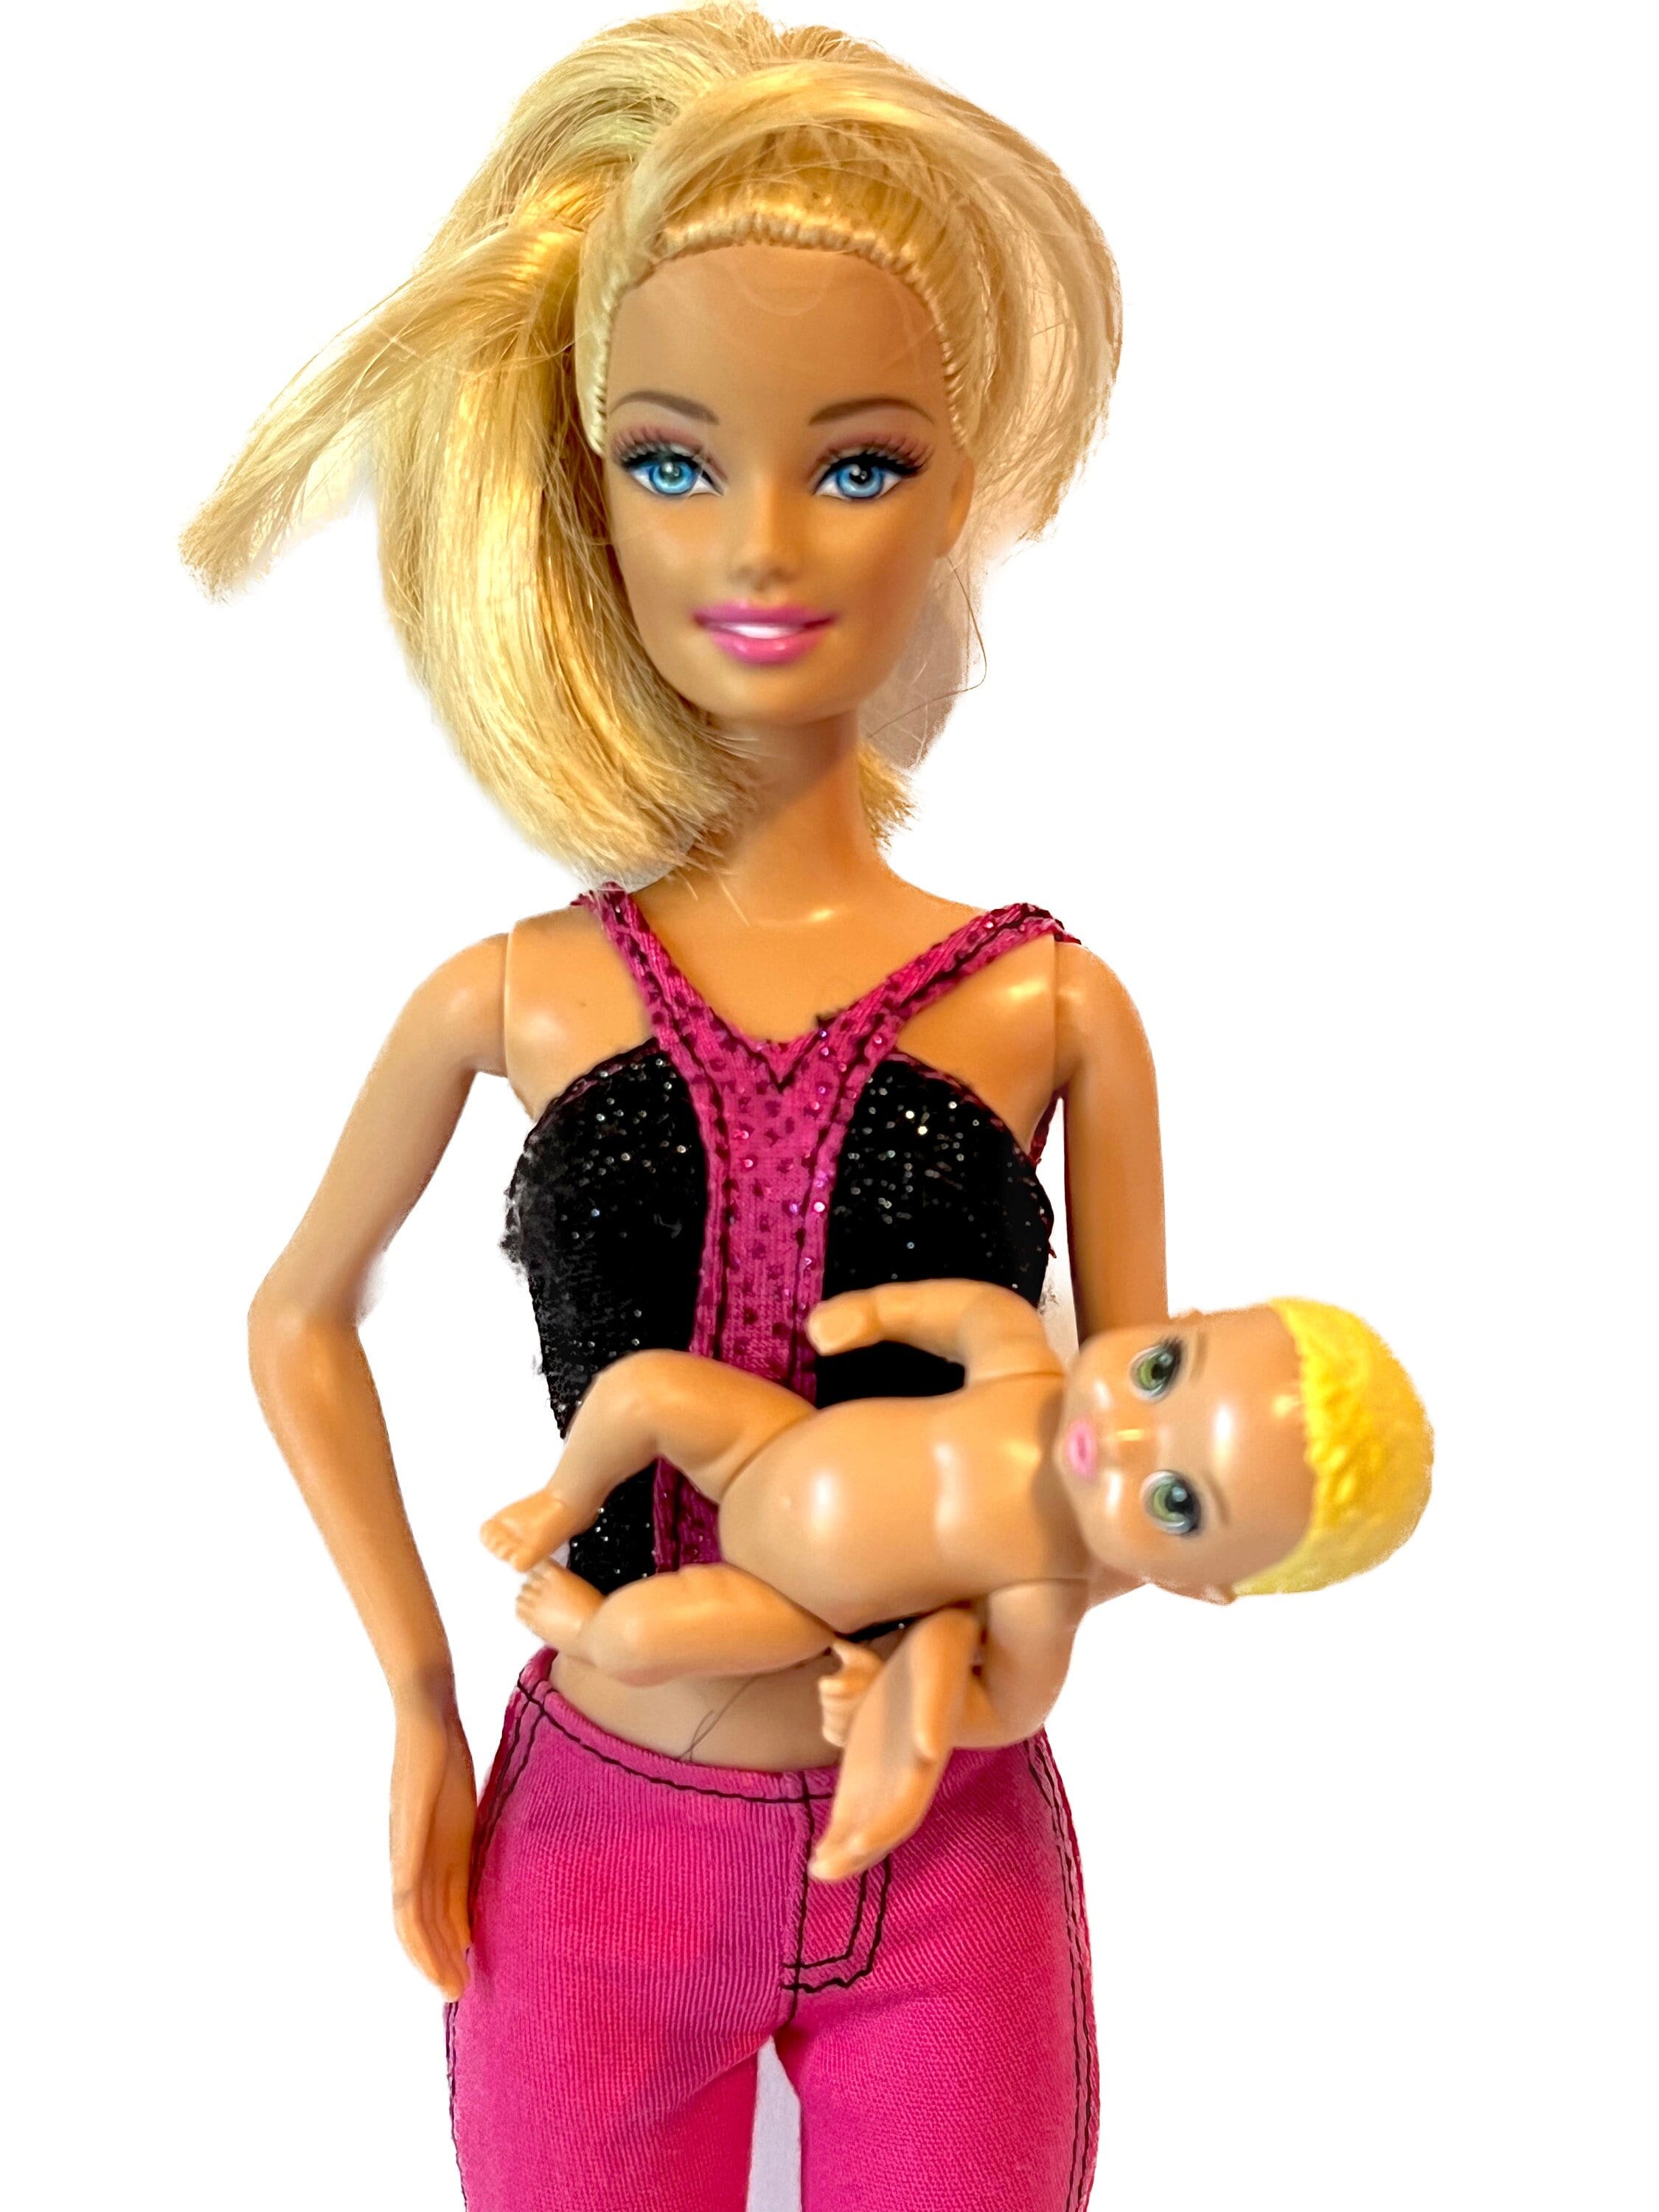 Ken et Barbie vétérinaire - nombreux accessoires, animaux